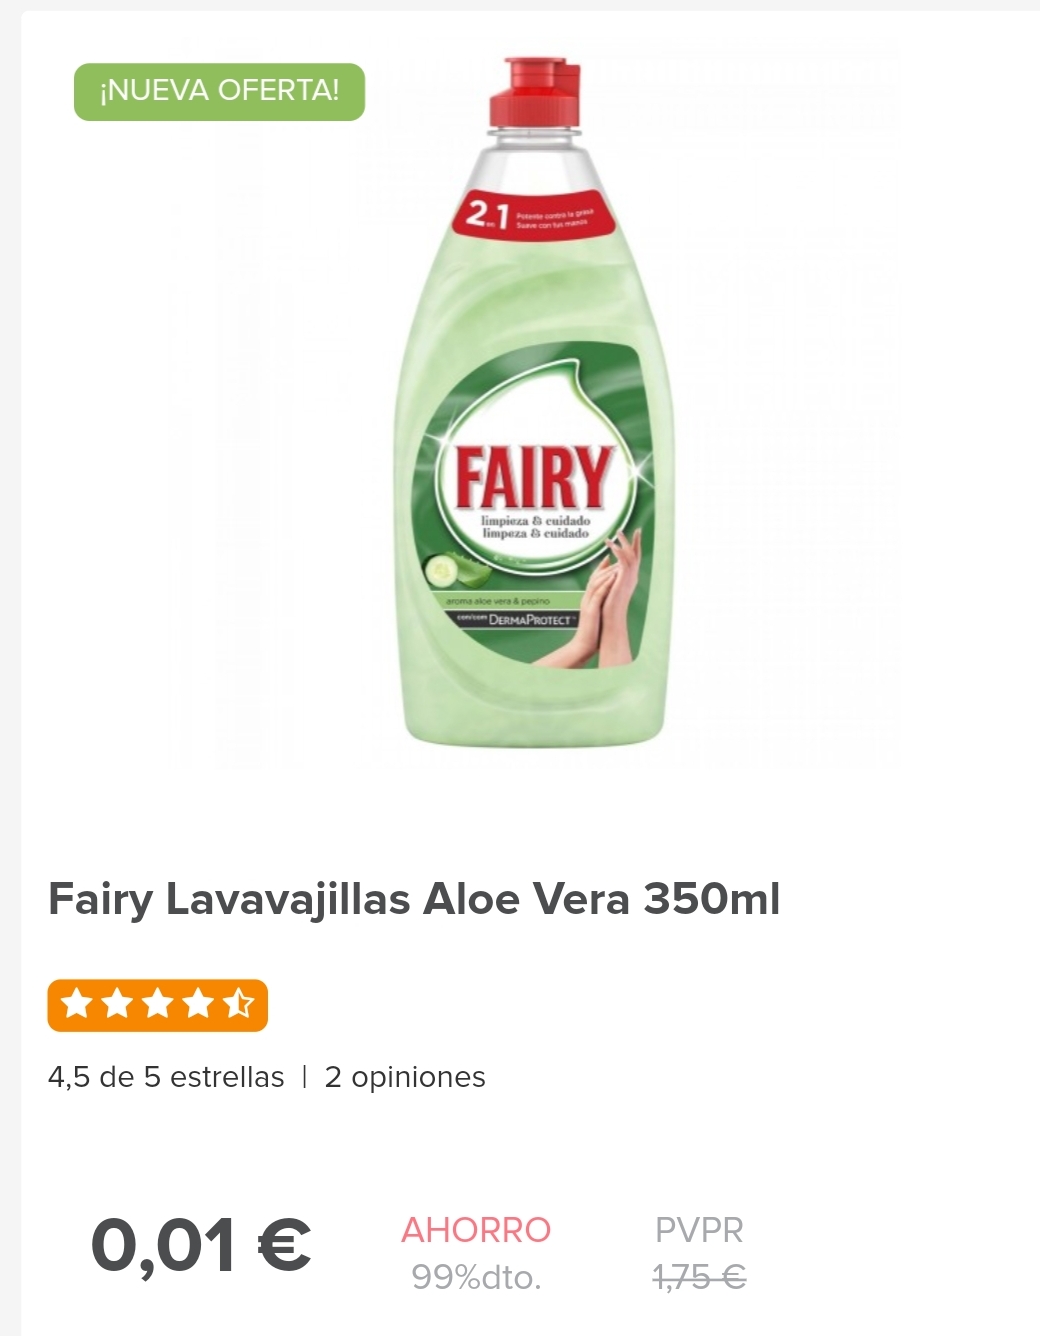 Fairy aloe vera 350ml